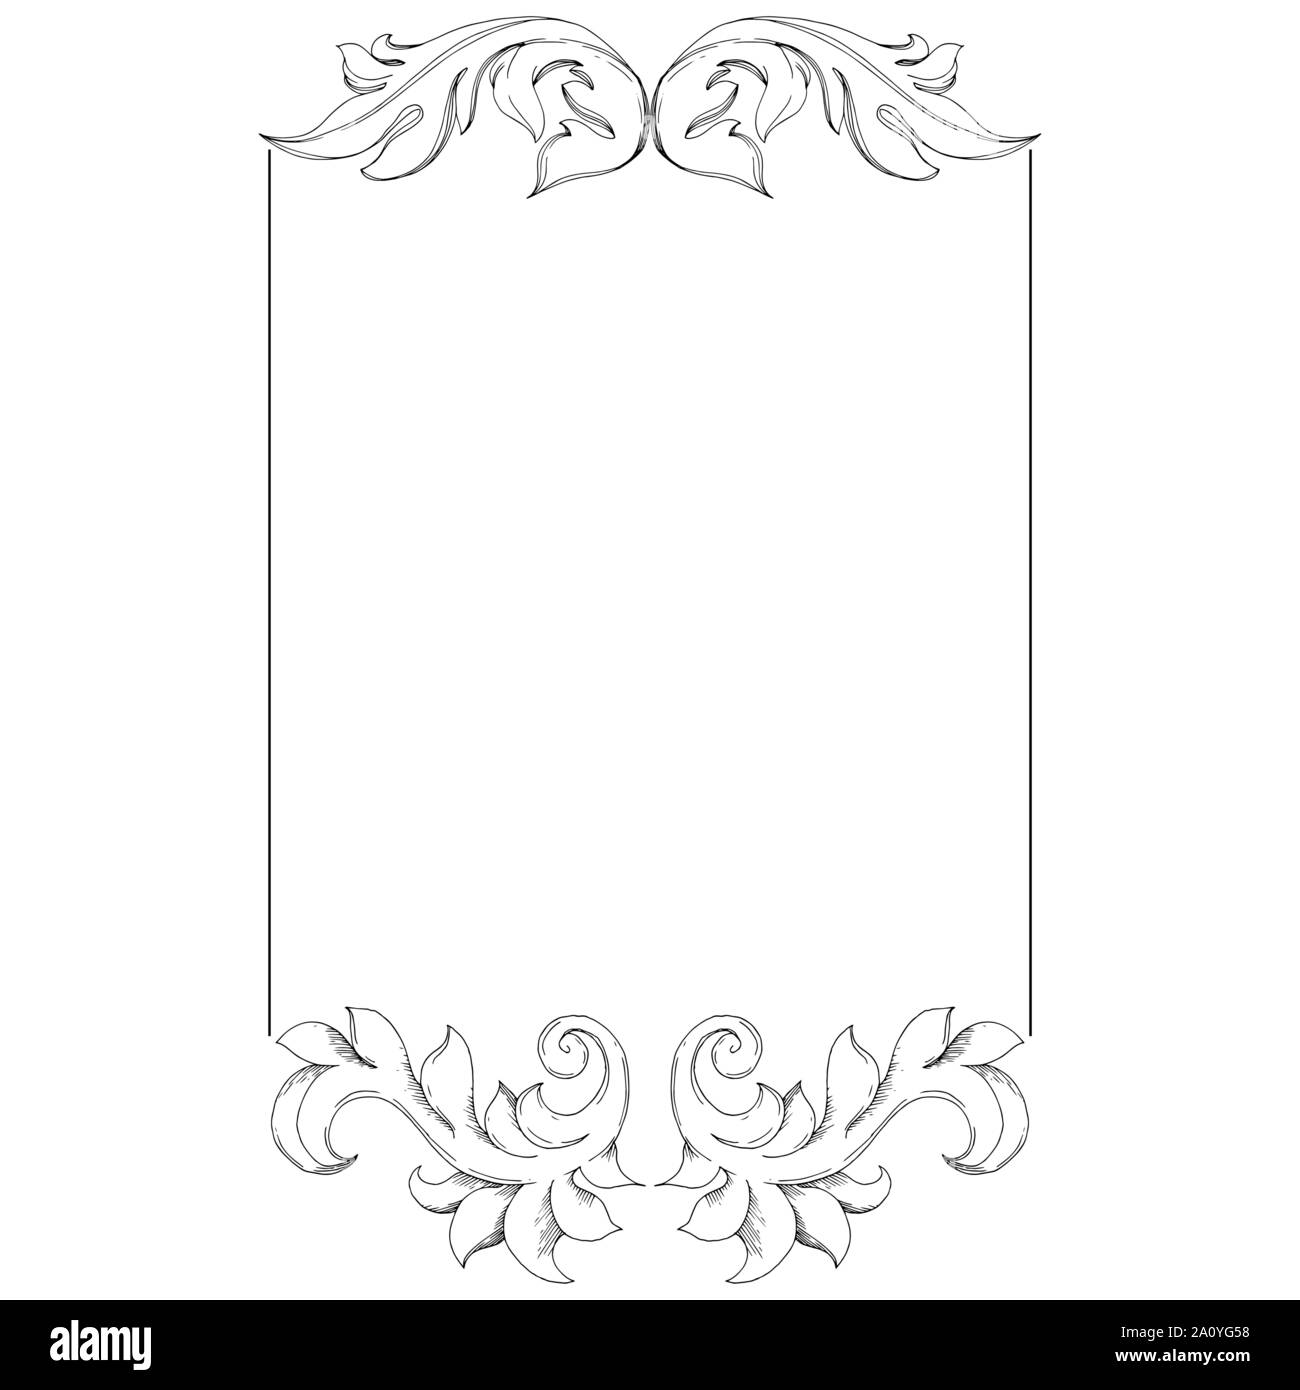 Vektor Barock Monogramm floralen Ornament. Barocke Gestaltungselemente. Schwarze und weiße Tinte Art Rand eingravierte ornament Quadrat auf weißem Hintergrund. Stock Vektor